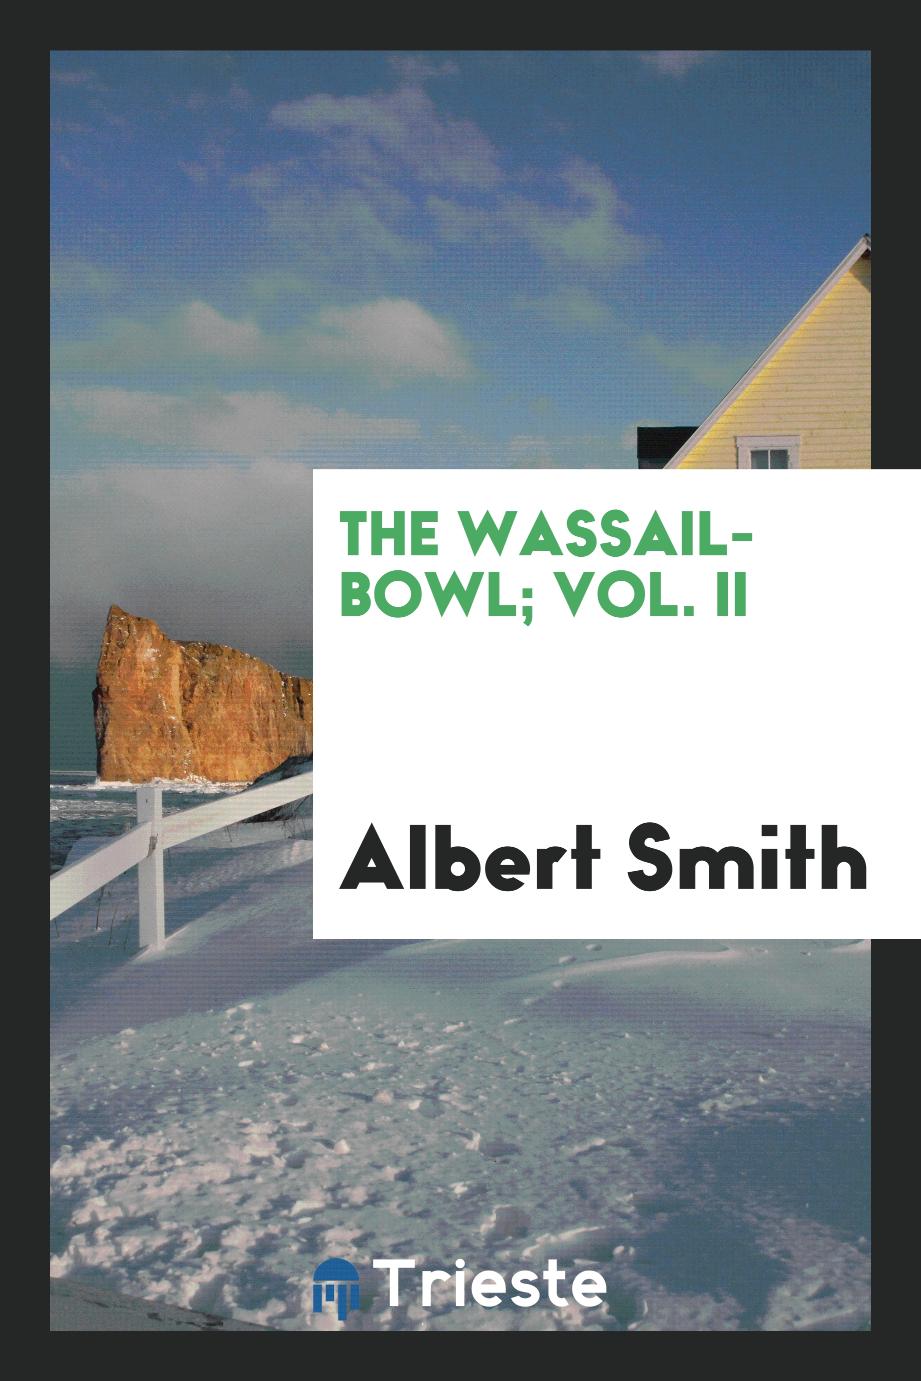 The wassail-bowl; Vol. II